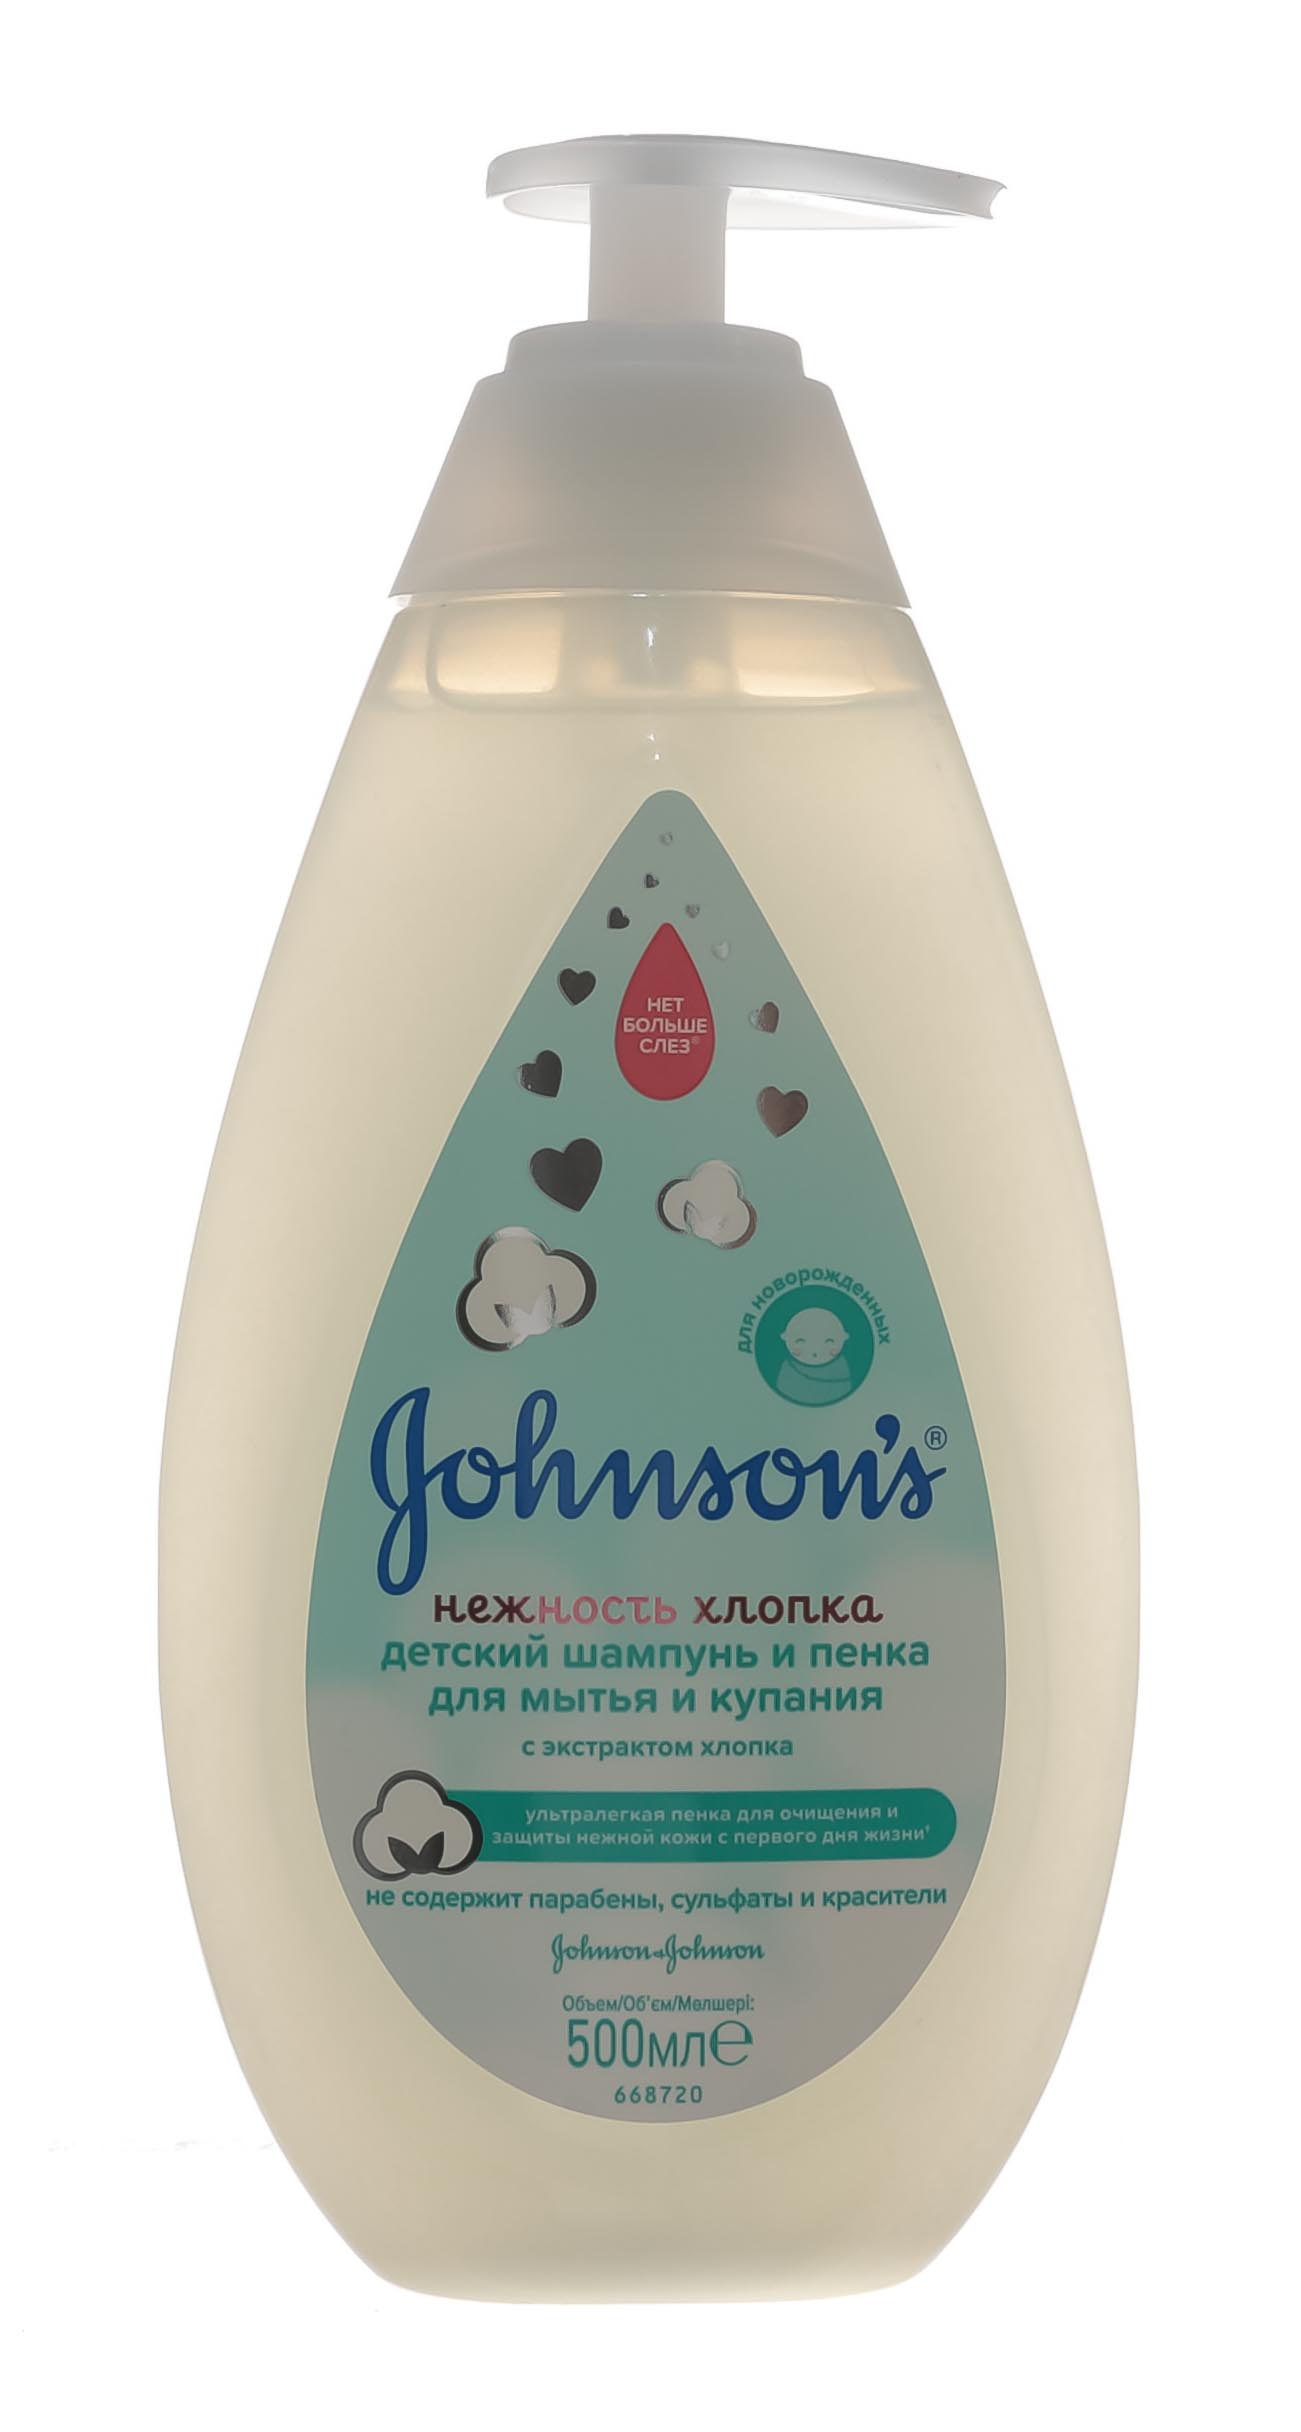 Johnsons Детский шампунь и пенка для мытья и купания «Нежность хлопка», 500 мл (Johnsons, Для волос)